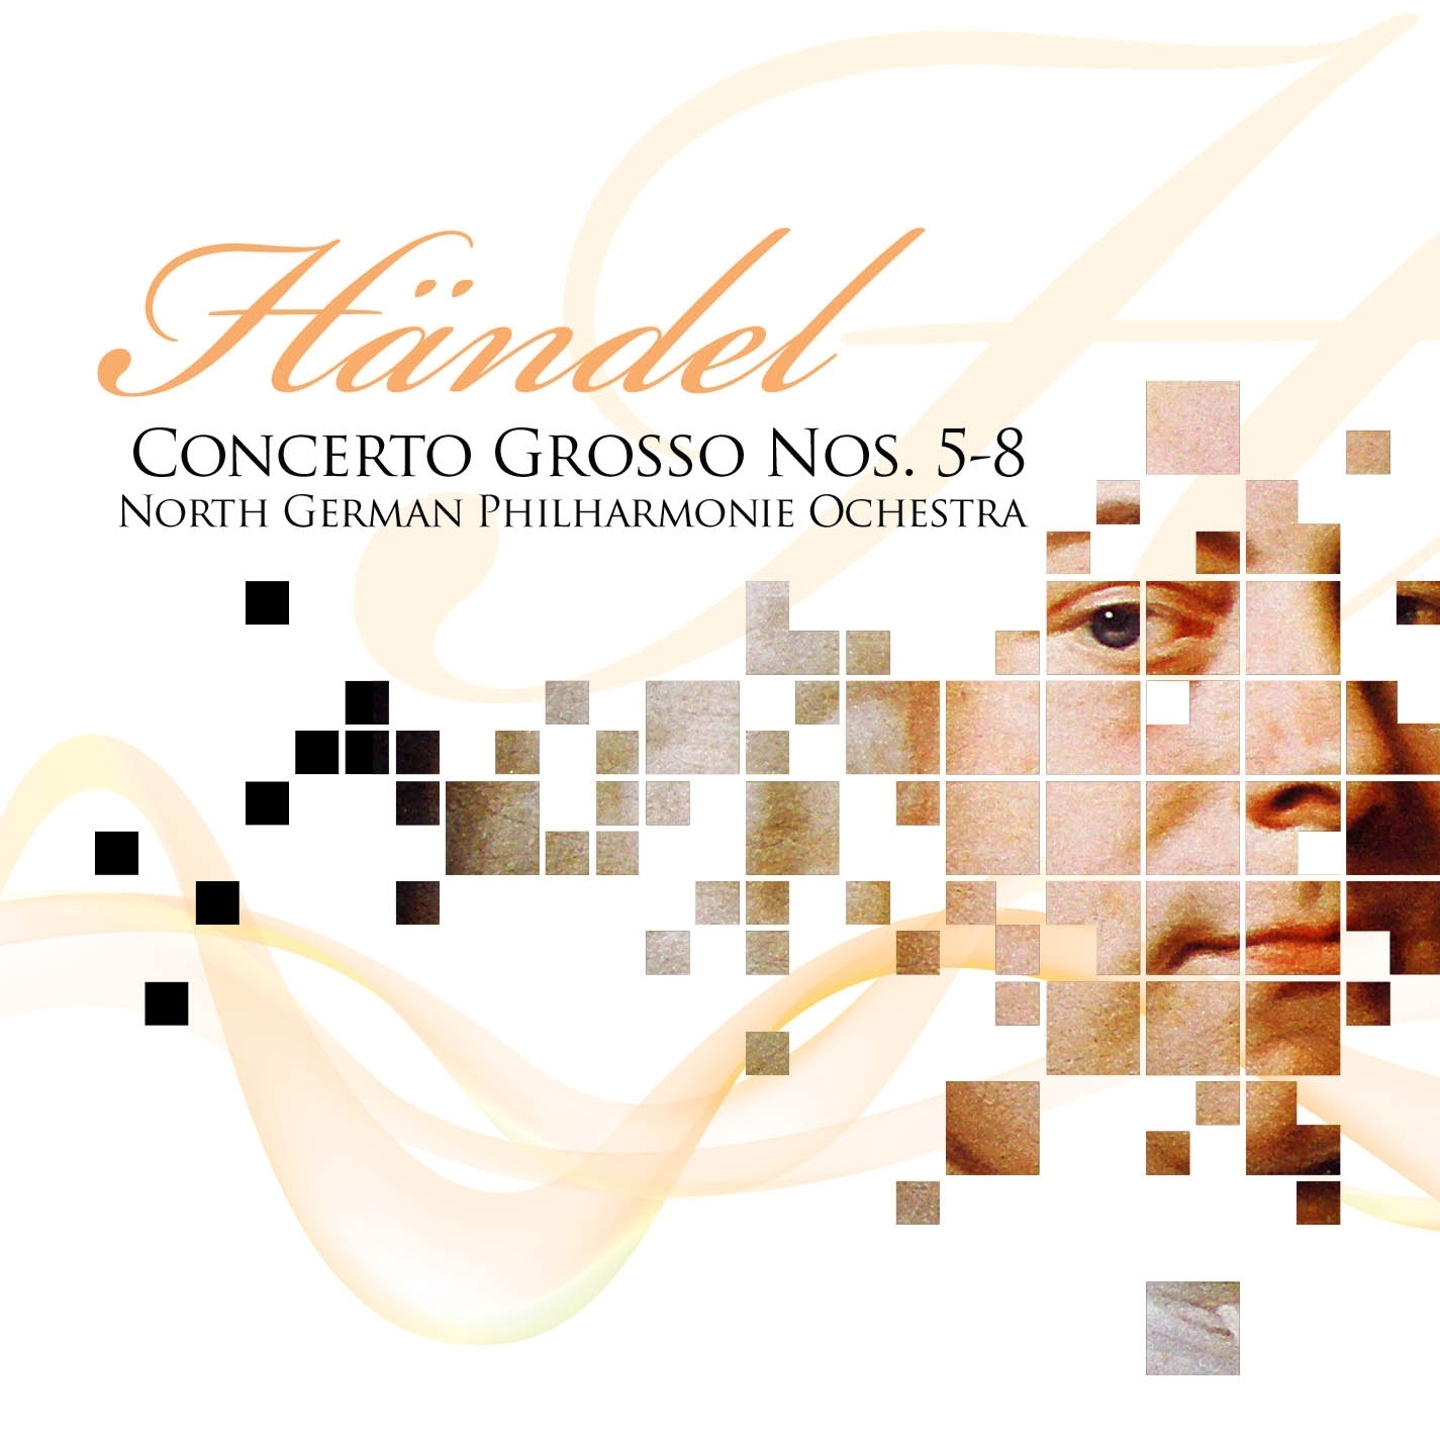 Concerto Grosso No. 6, in G Minor, Op. 6 : Larghetto affettuoso